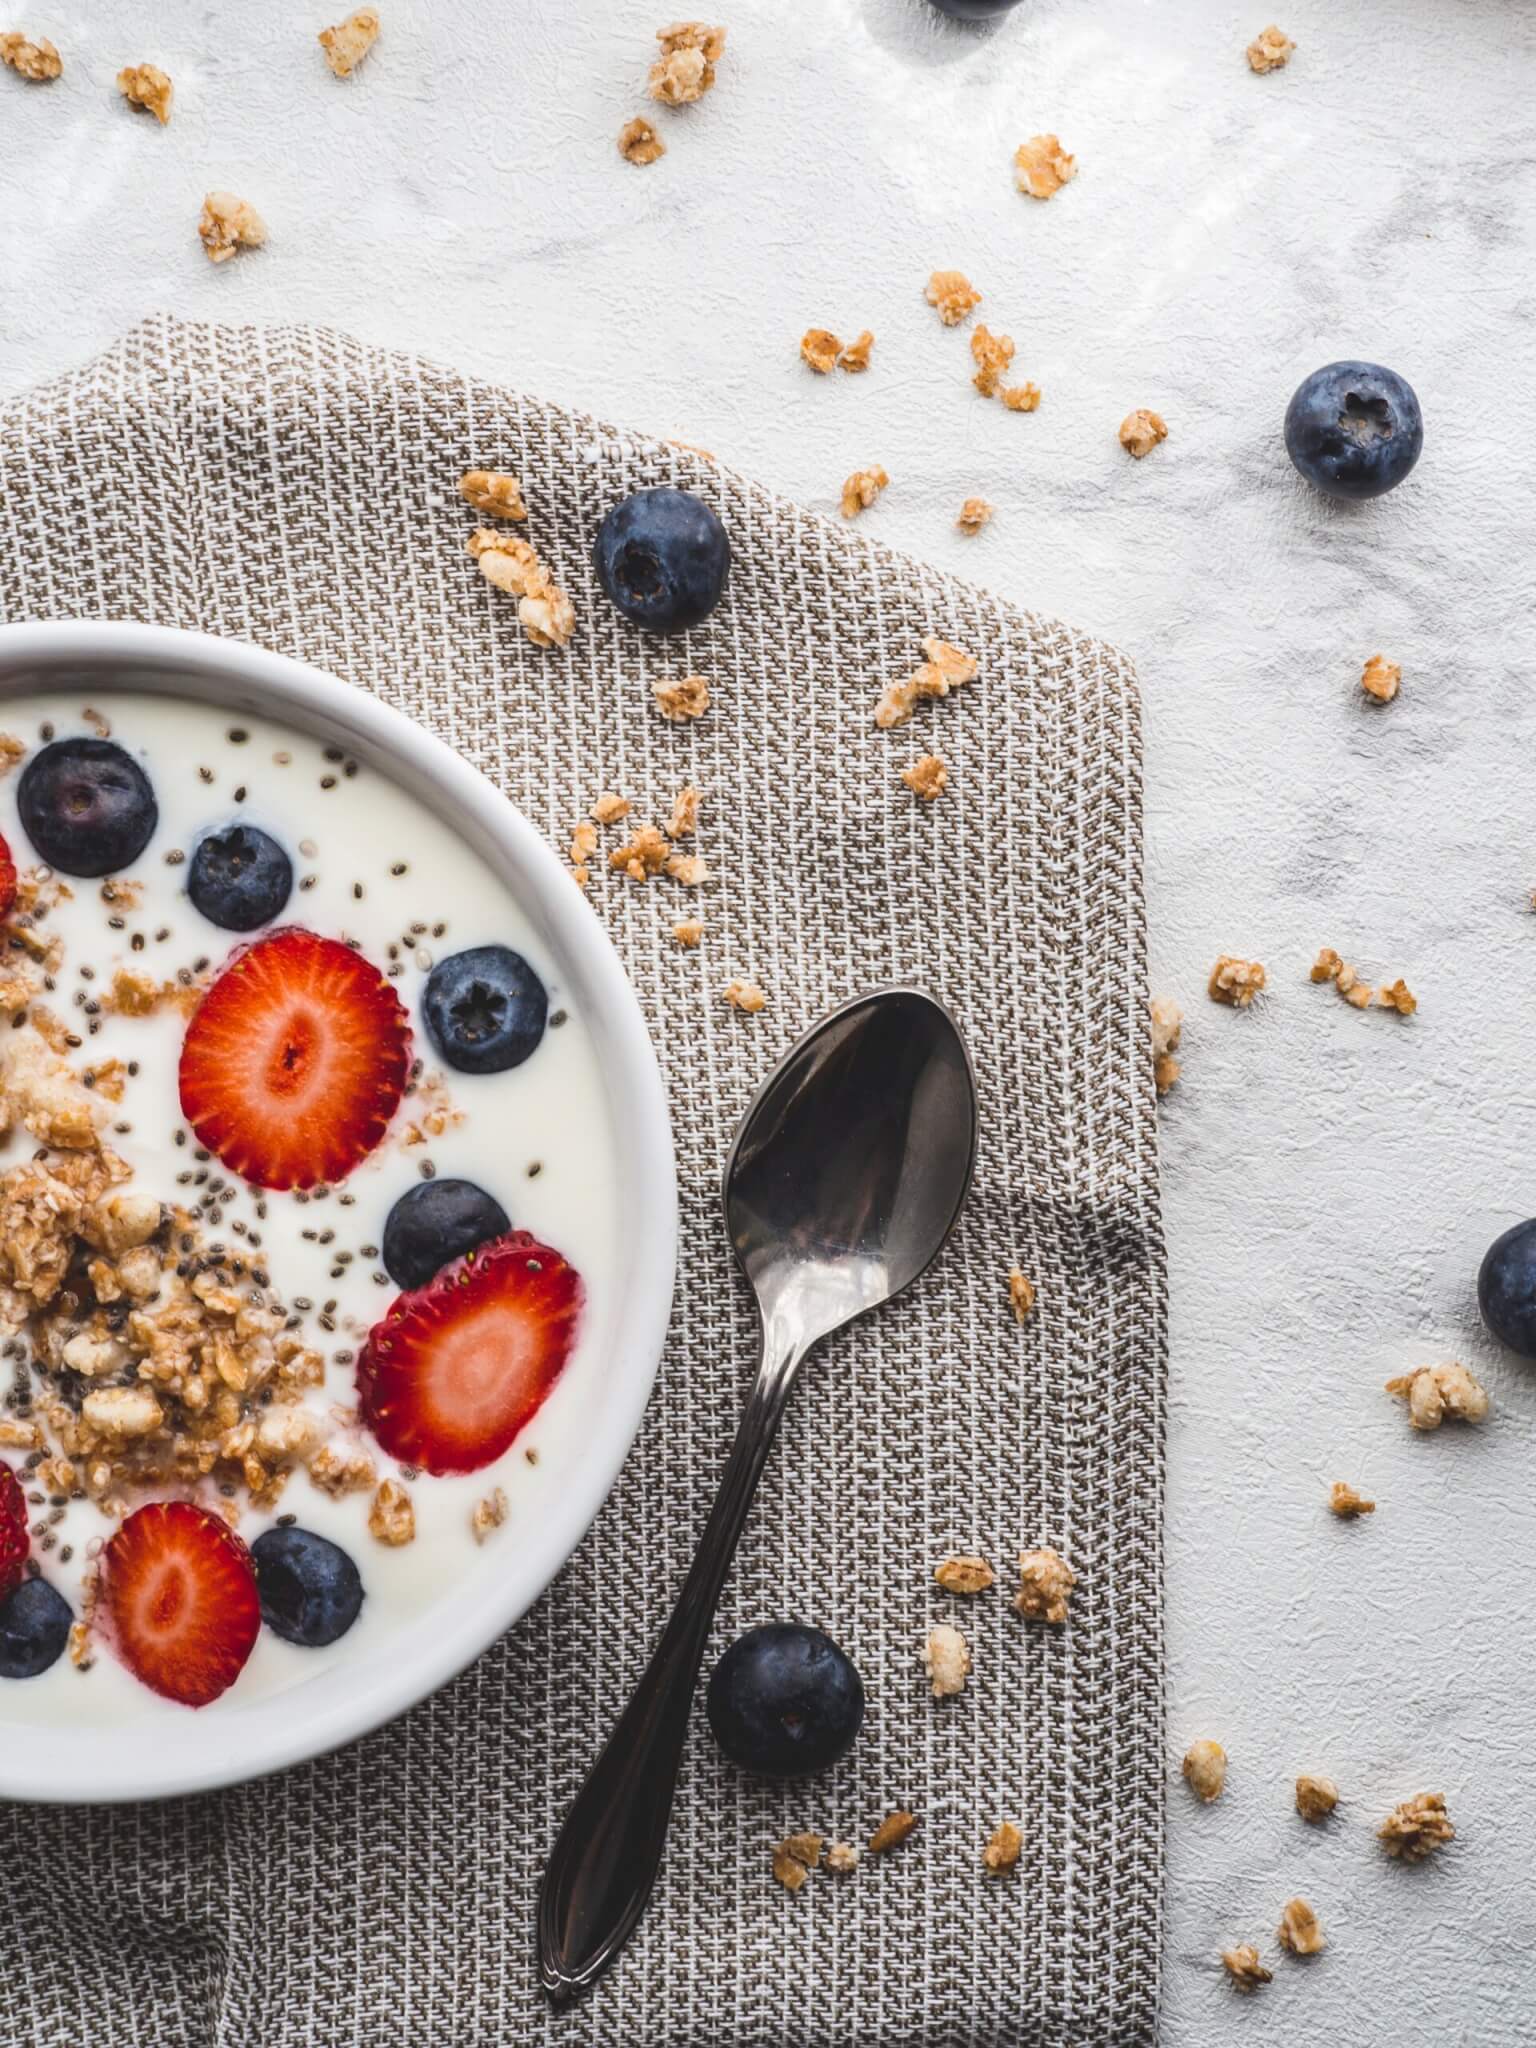 Materias primas alimenticias comunes – yogures